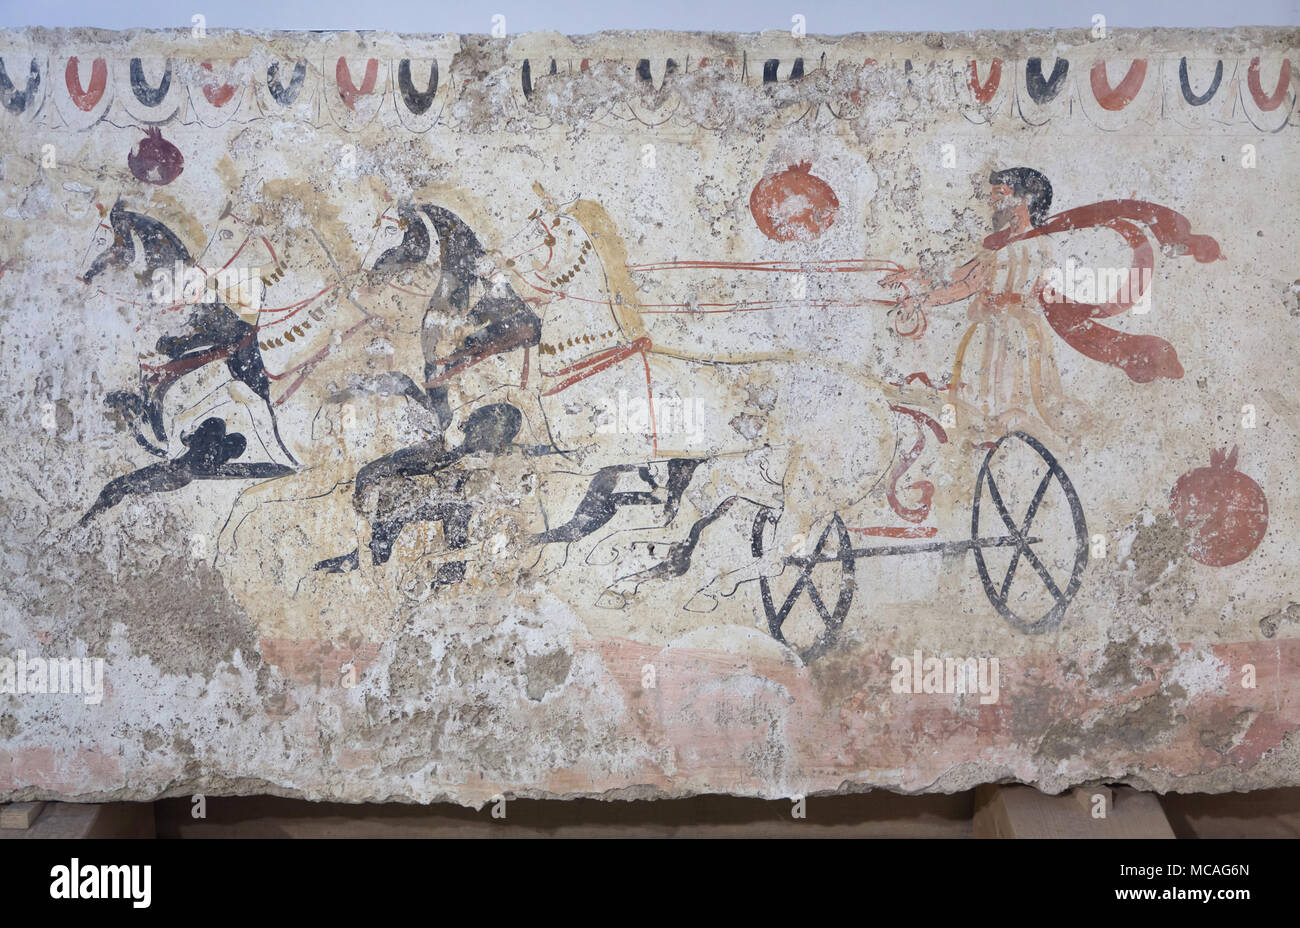 Biga Race (course de chars) décrite dans la fresque Lucane dès le 4ème siècle avant J.-C. sur l'affichage dans le musée archéologique de Paestum (Museo Archeologico di Paestum) à Paestum, en Campanie, Italie. Banque D'Images